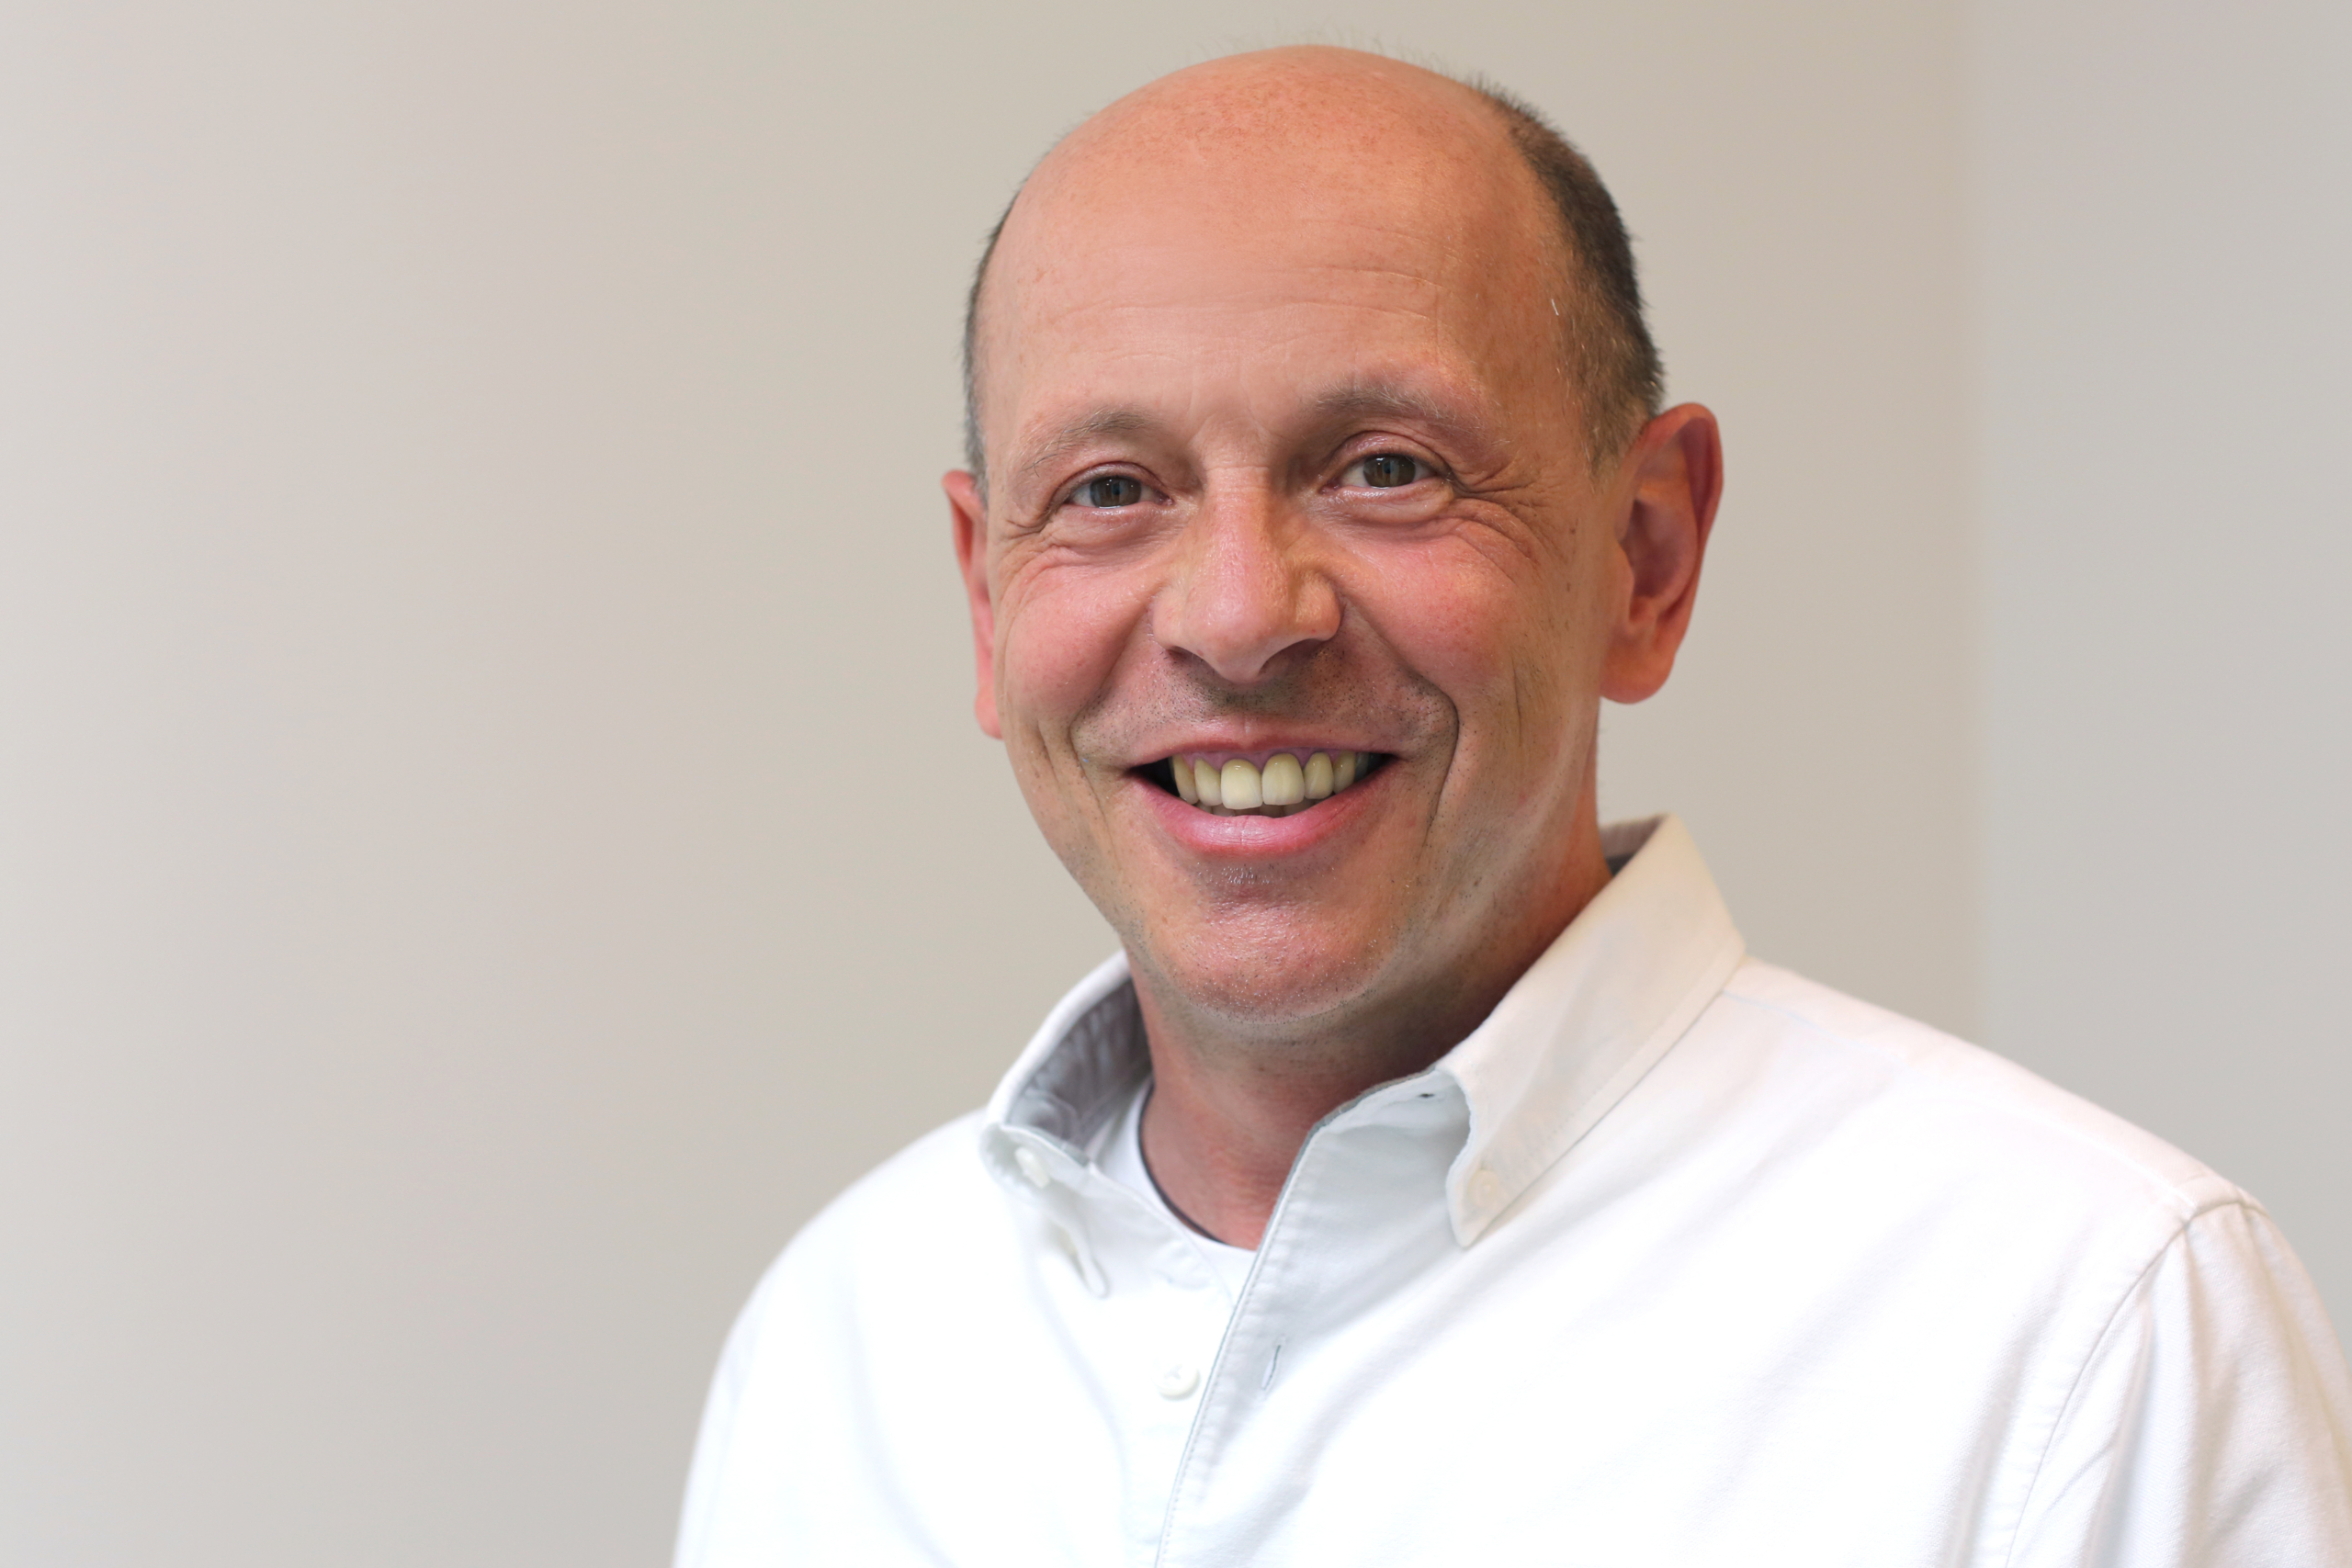 Hier ist zu sehen die Person Horst Schneider, Geschäftsführer PSP Homburg mit weißem Hemd vor hellgrauem Hintergrund.